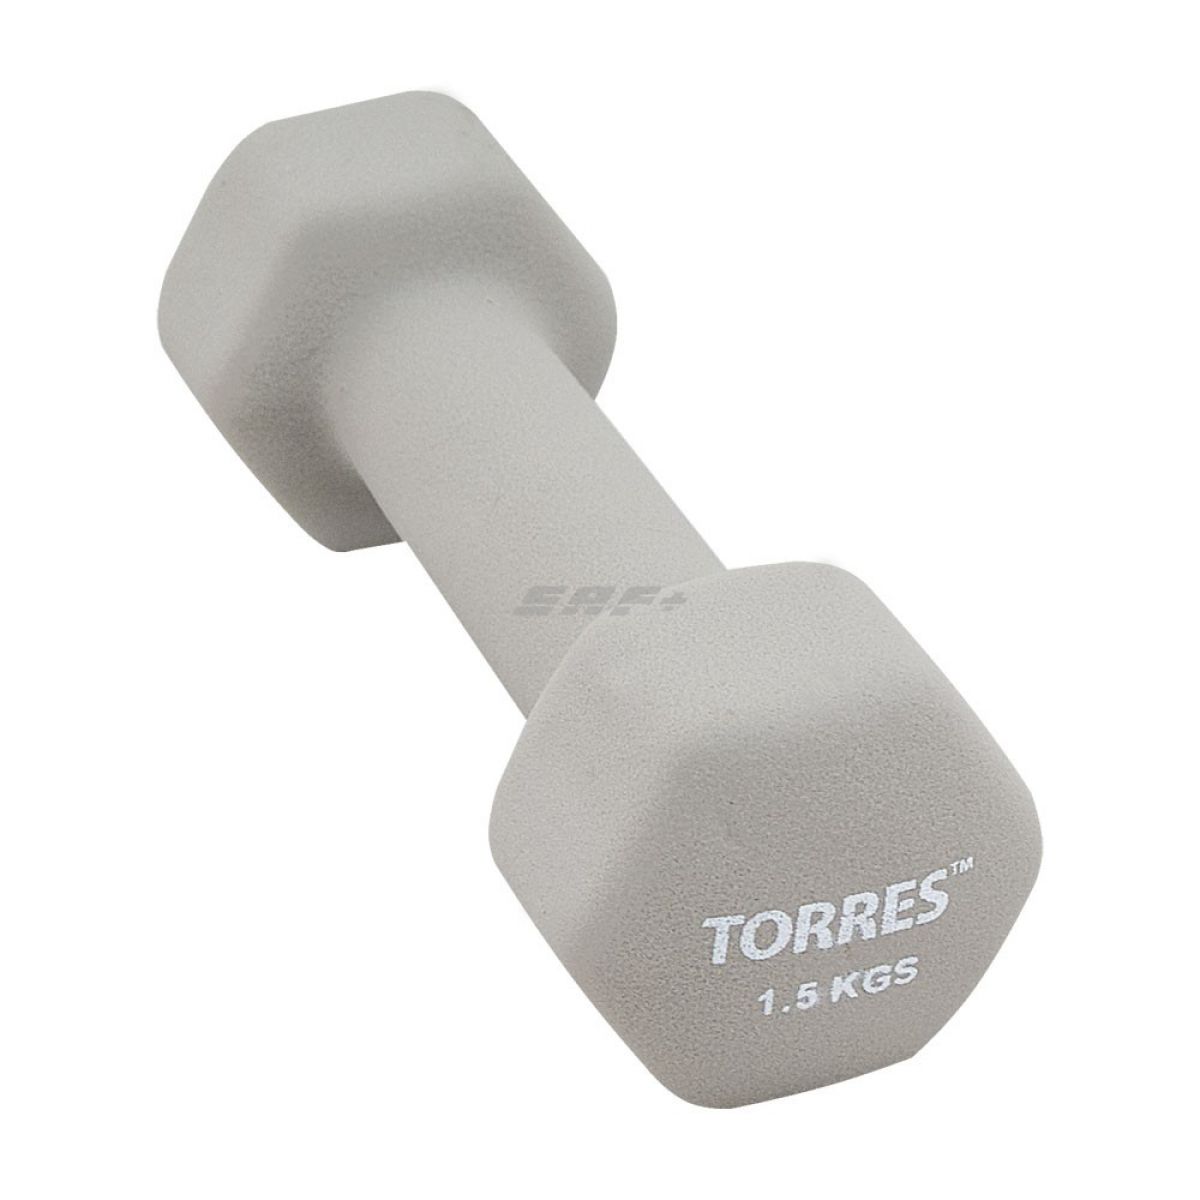  TORRES Гантель 1.5 кг